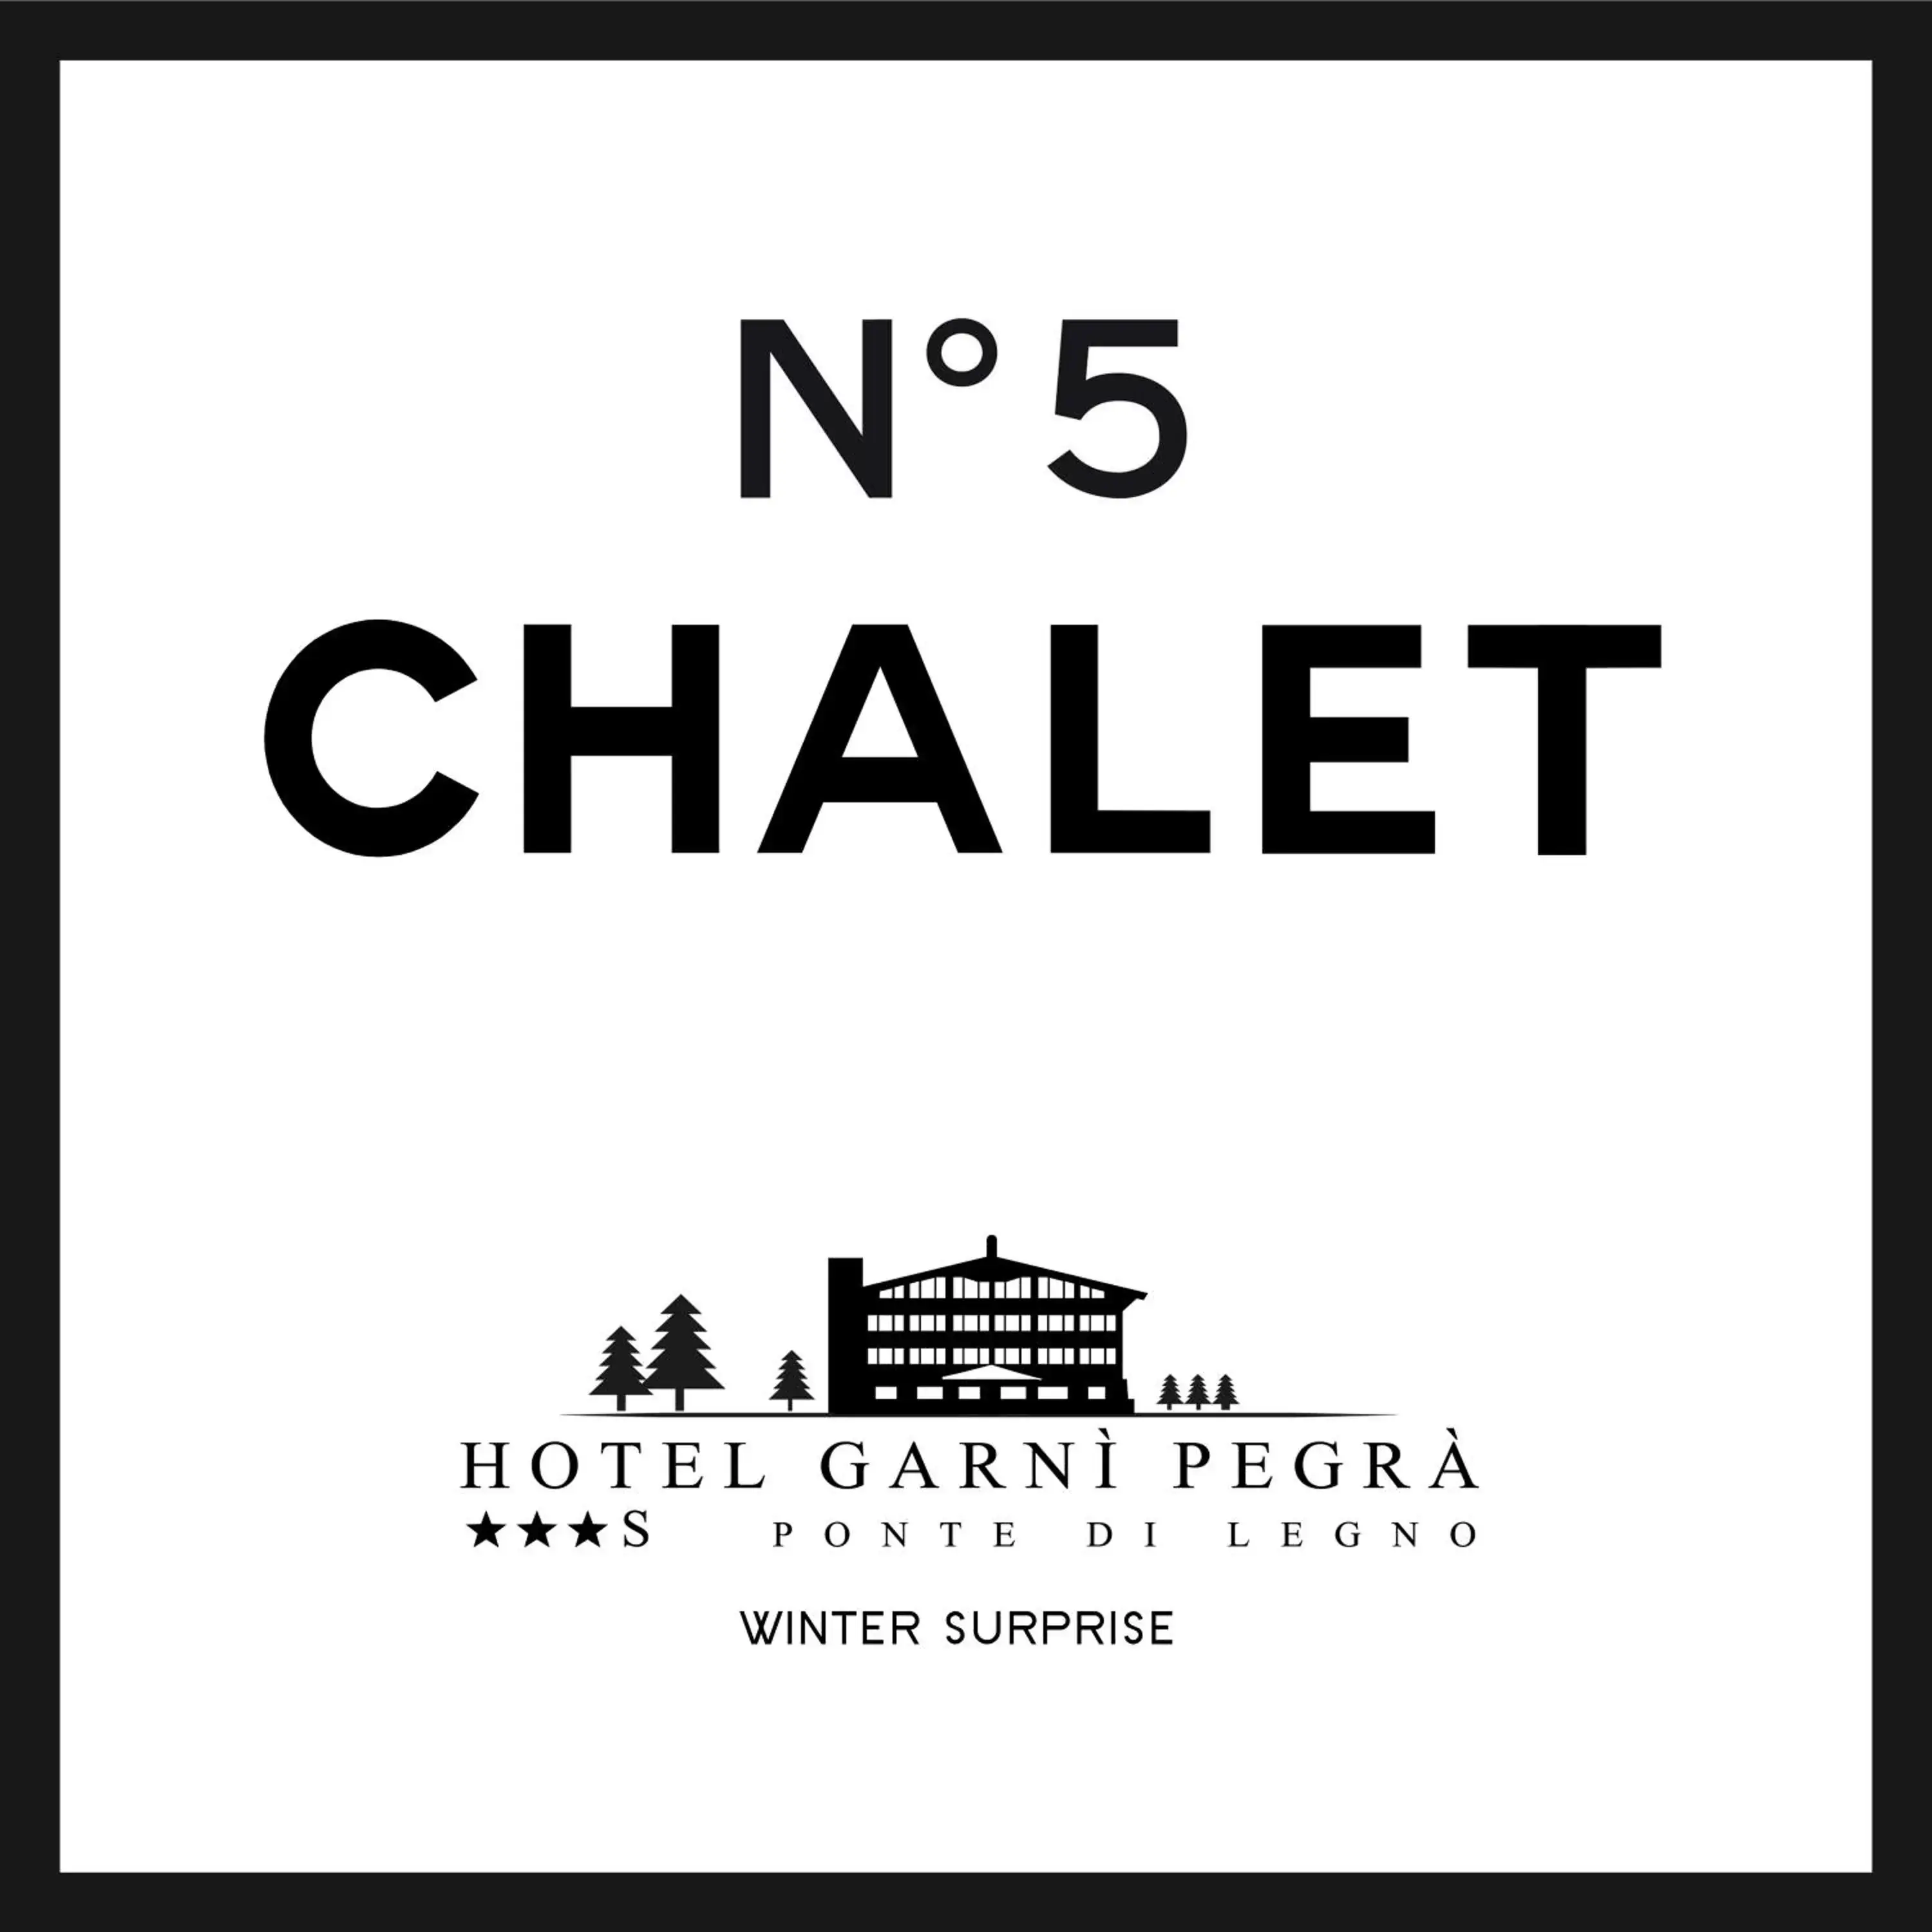 Property logo or sign in Hotel Garni Pegrà